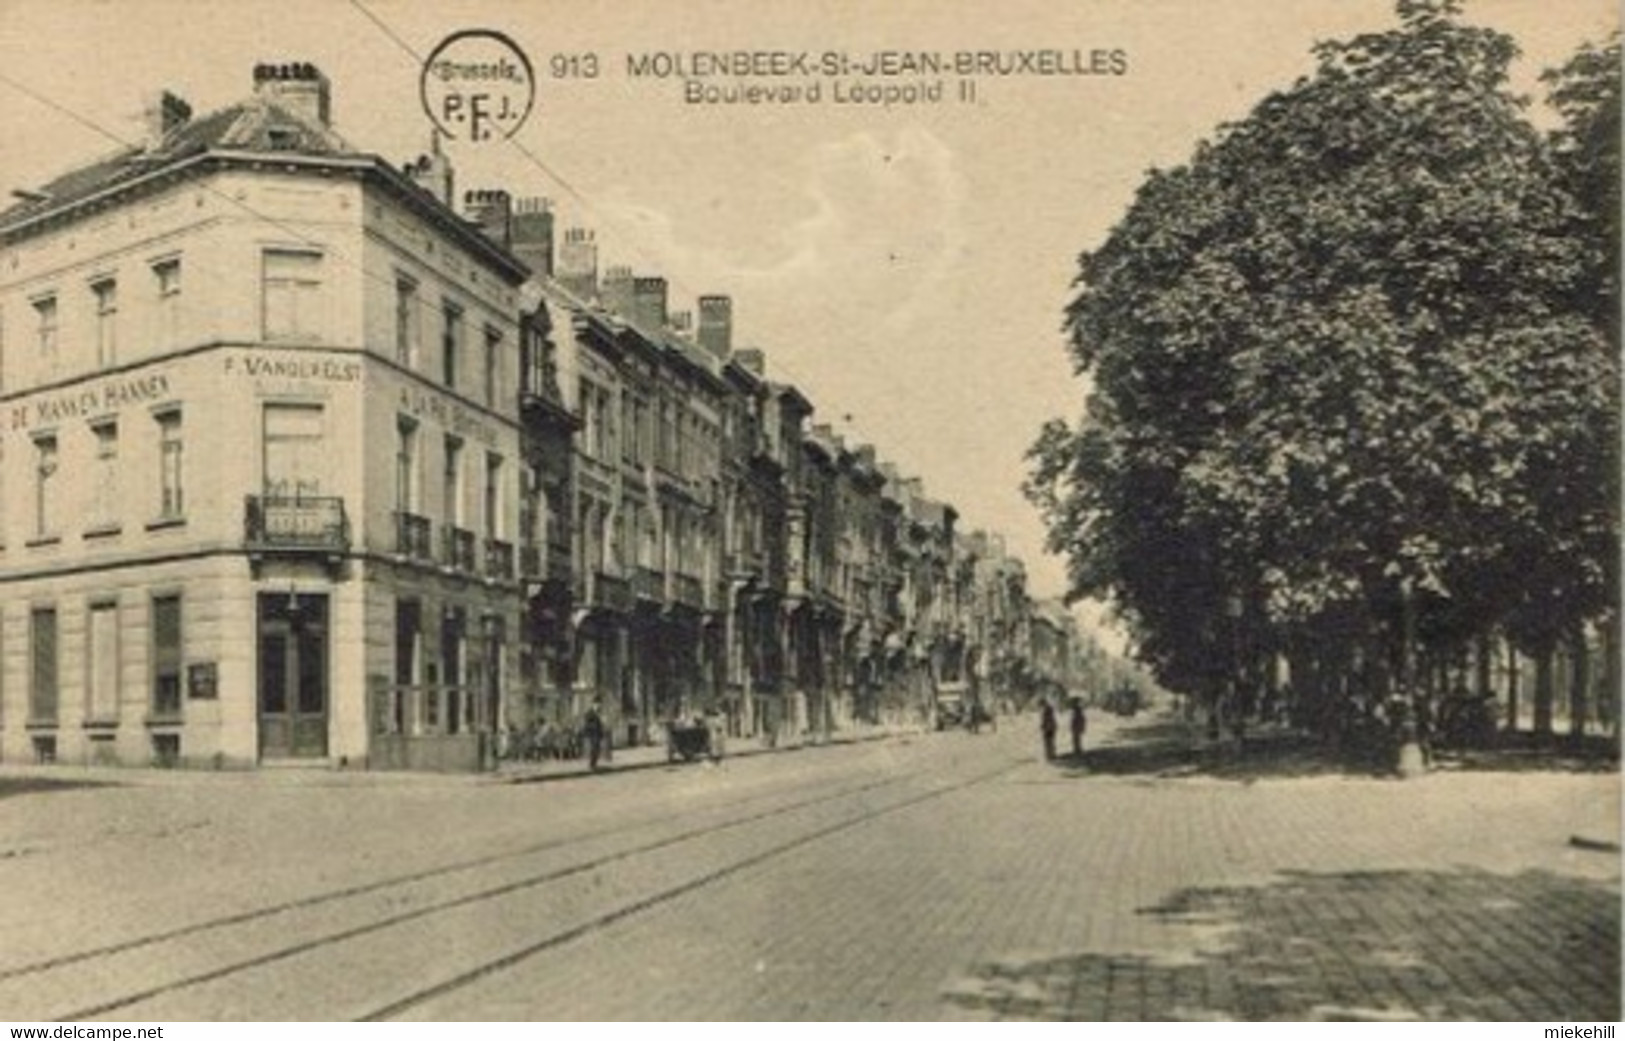 BRUXELLES-MOLENBEEK-BOULEVARD LEOPOLD II-CAFE A LA PIE BOITEUSE-F.VANDERELST - Molenbeek-St-Jean - St-Jans-Molenbeek